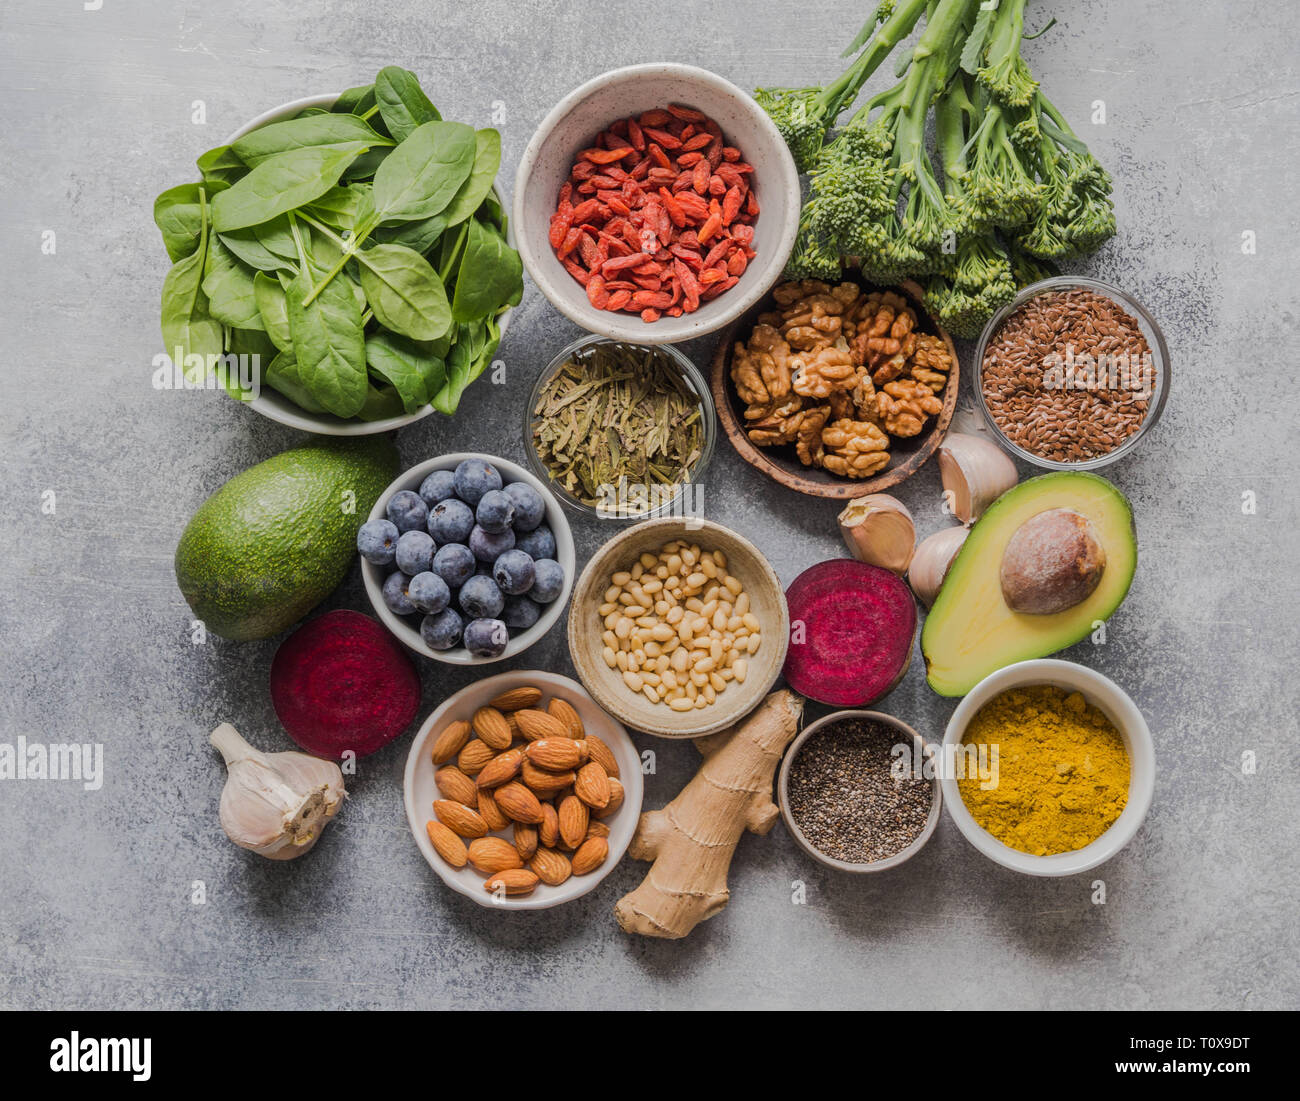 Pulire sano cibo - Ortaggi e legumi, frutta, superfoods su sfondo grigio. Mangiare sano concetto. Foto Stock